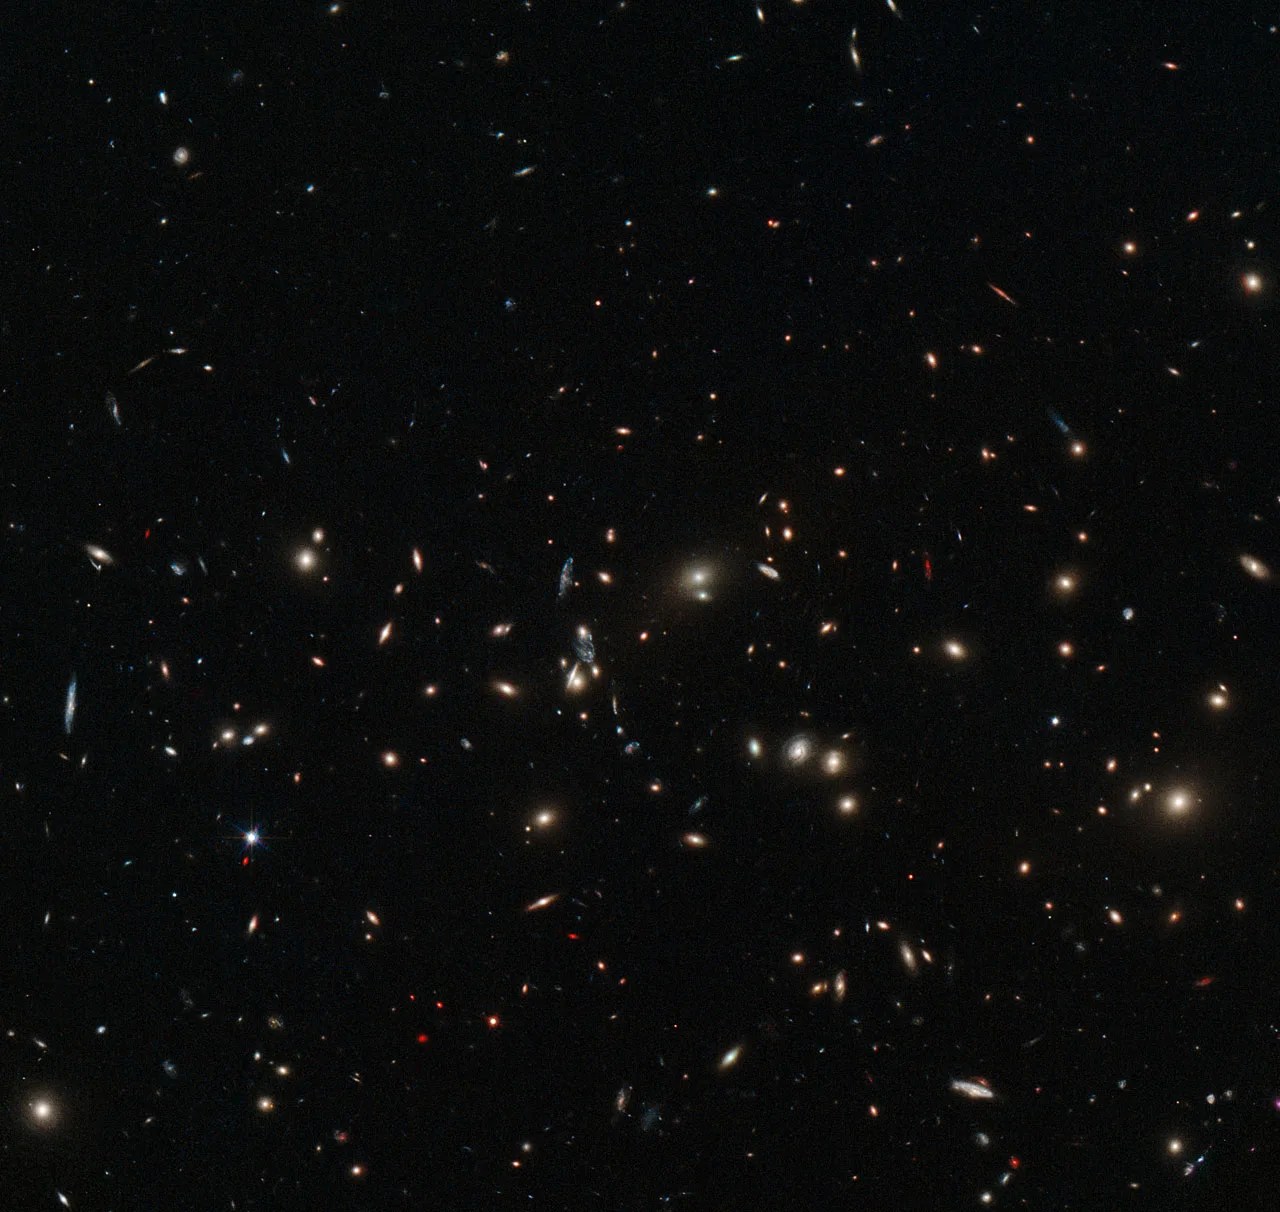 Galaxy cluster macs j0152.5-2852